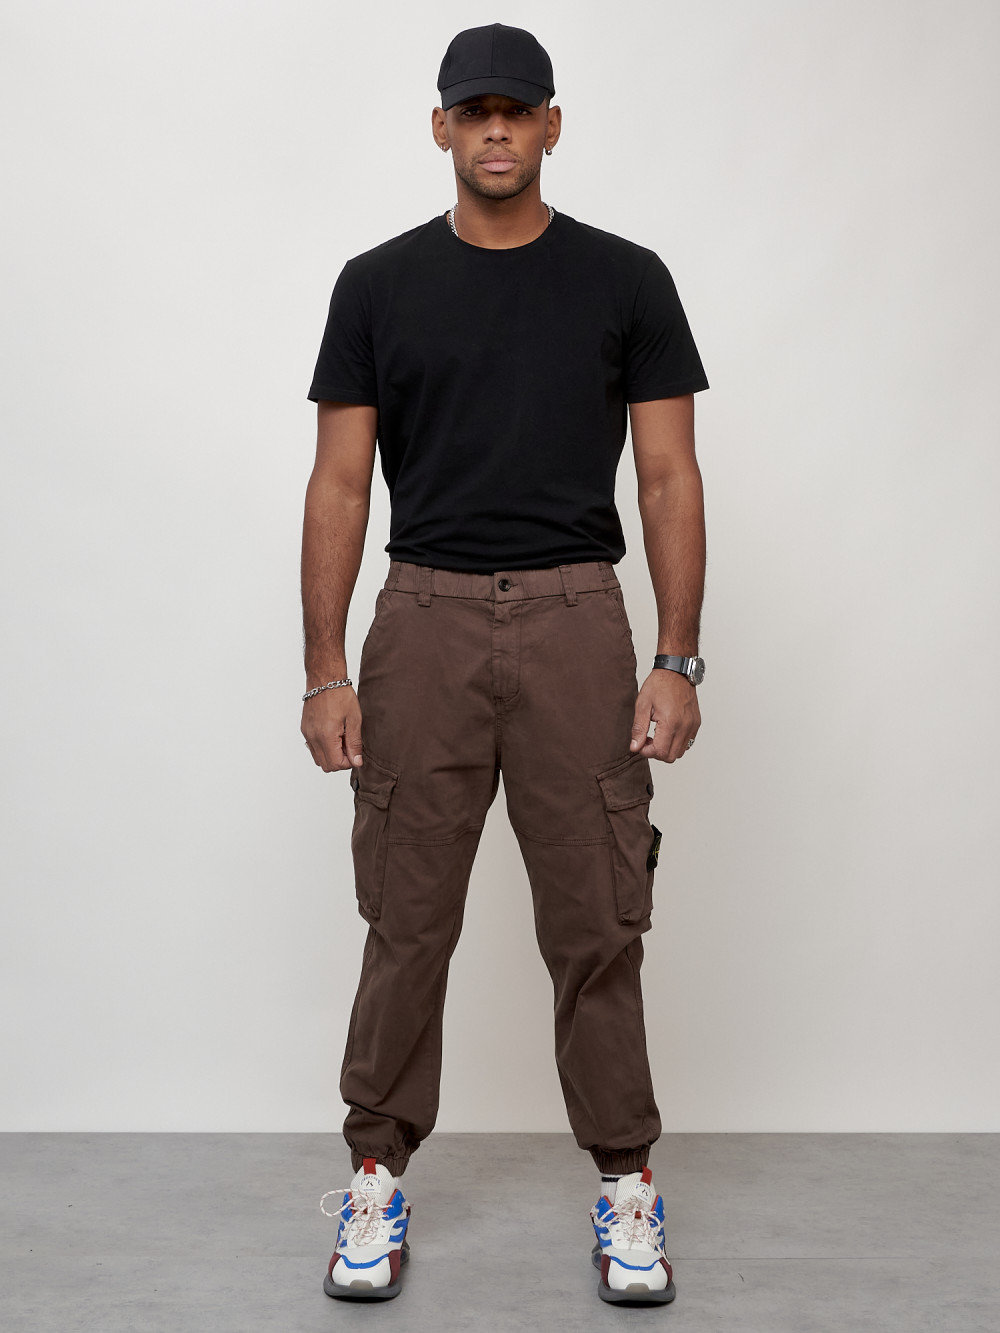 Джинсы карго мужские с накладными карманами коричневого цвета 2426K